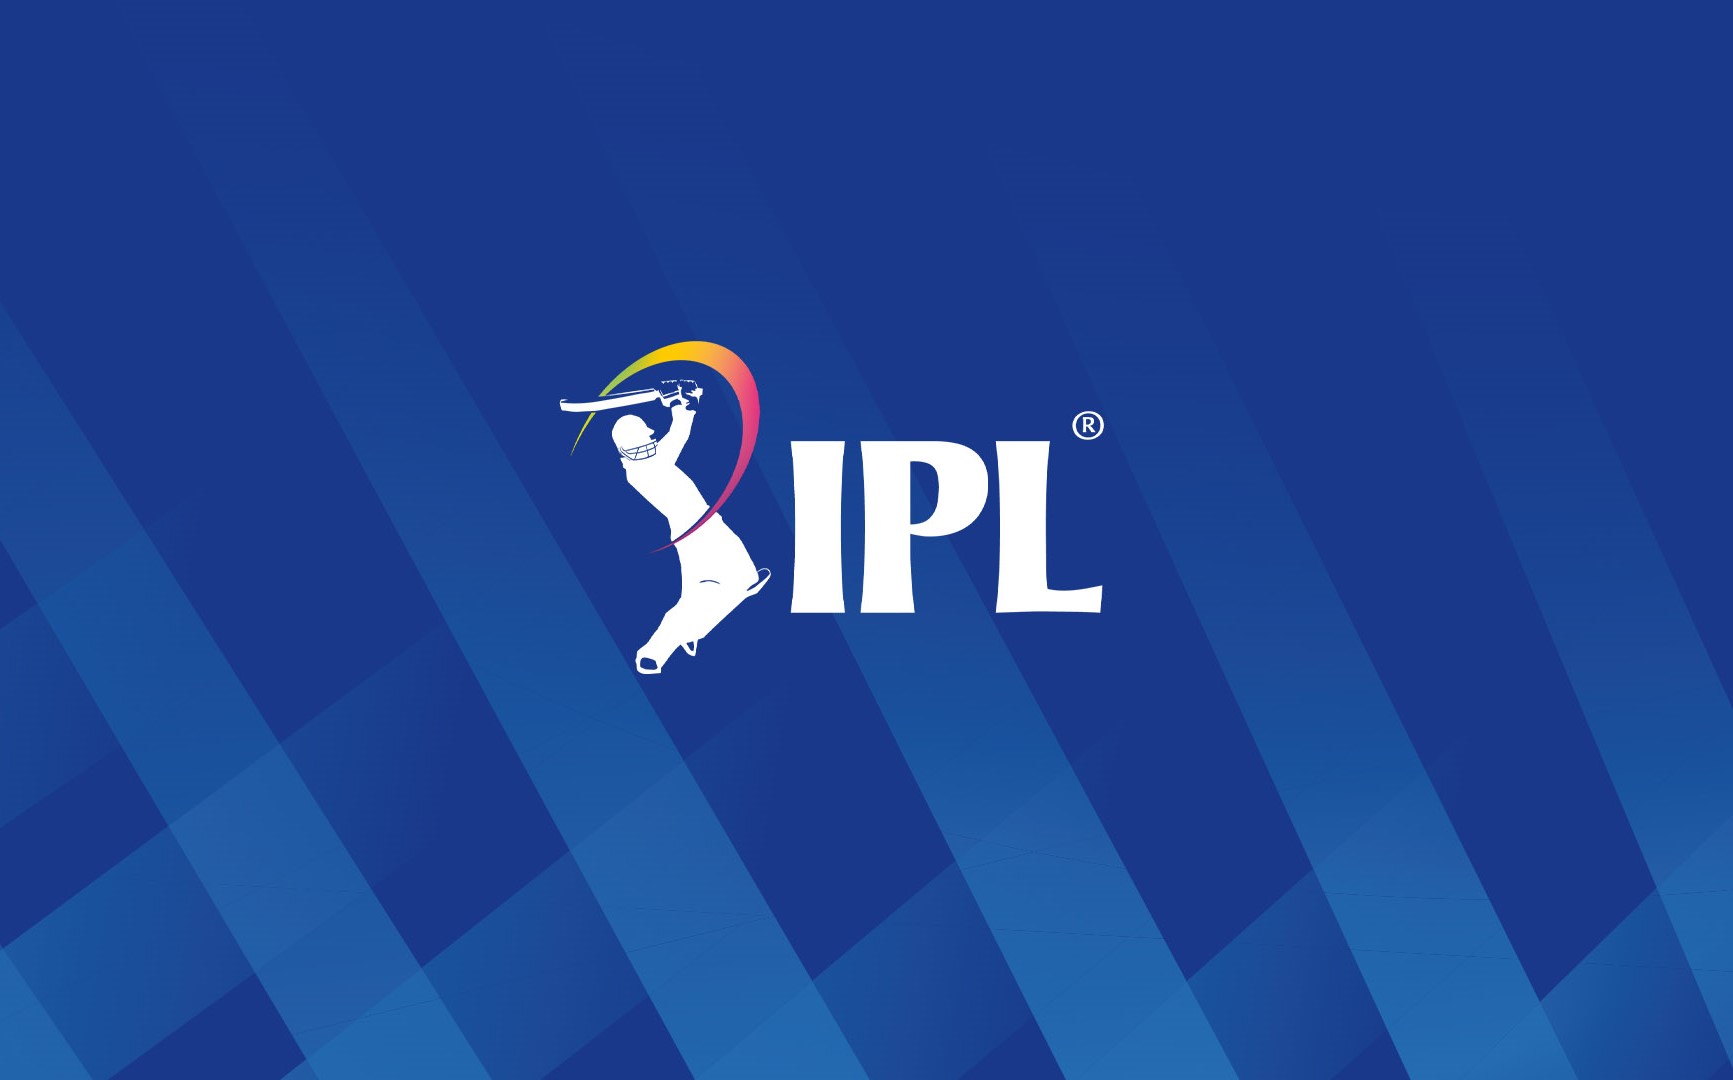 आईपीएलमा लिलामीका लागि प्रारम्भिक सूची सार्वजनिक, नेपालबाट १५ खेलाडी समावेश